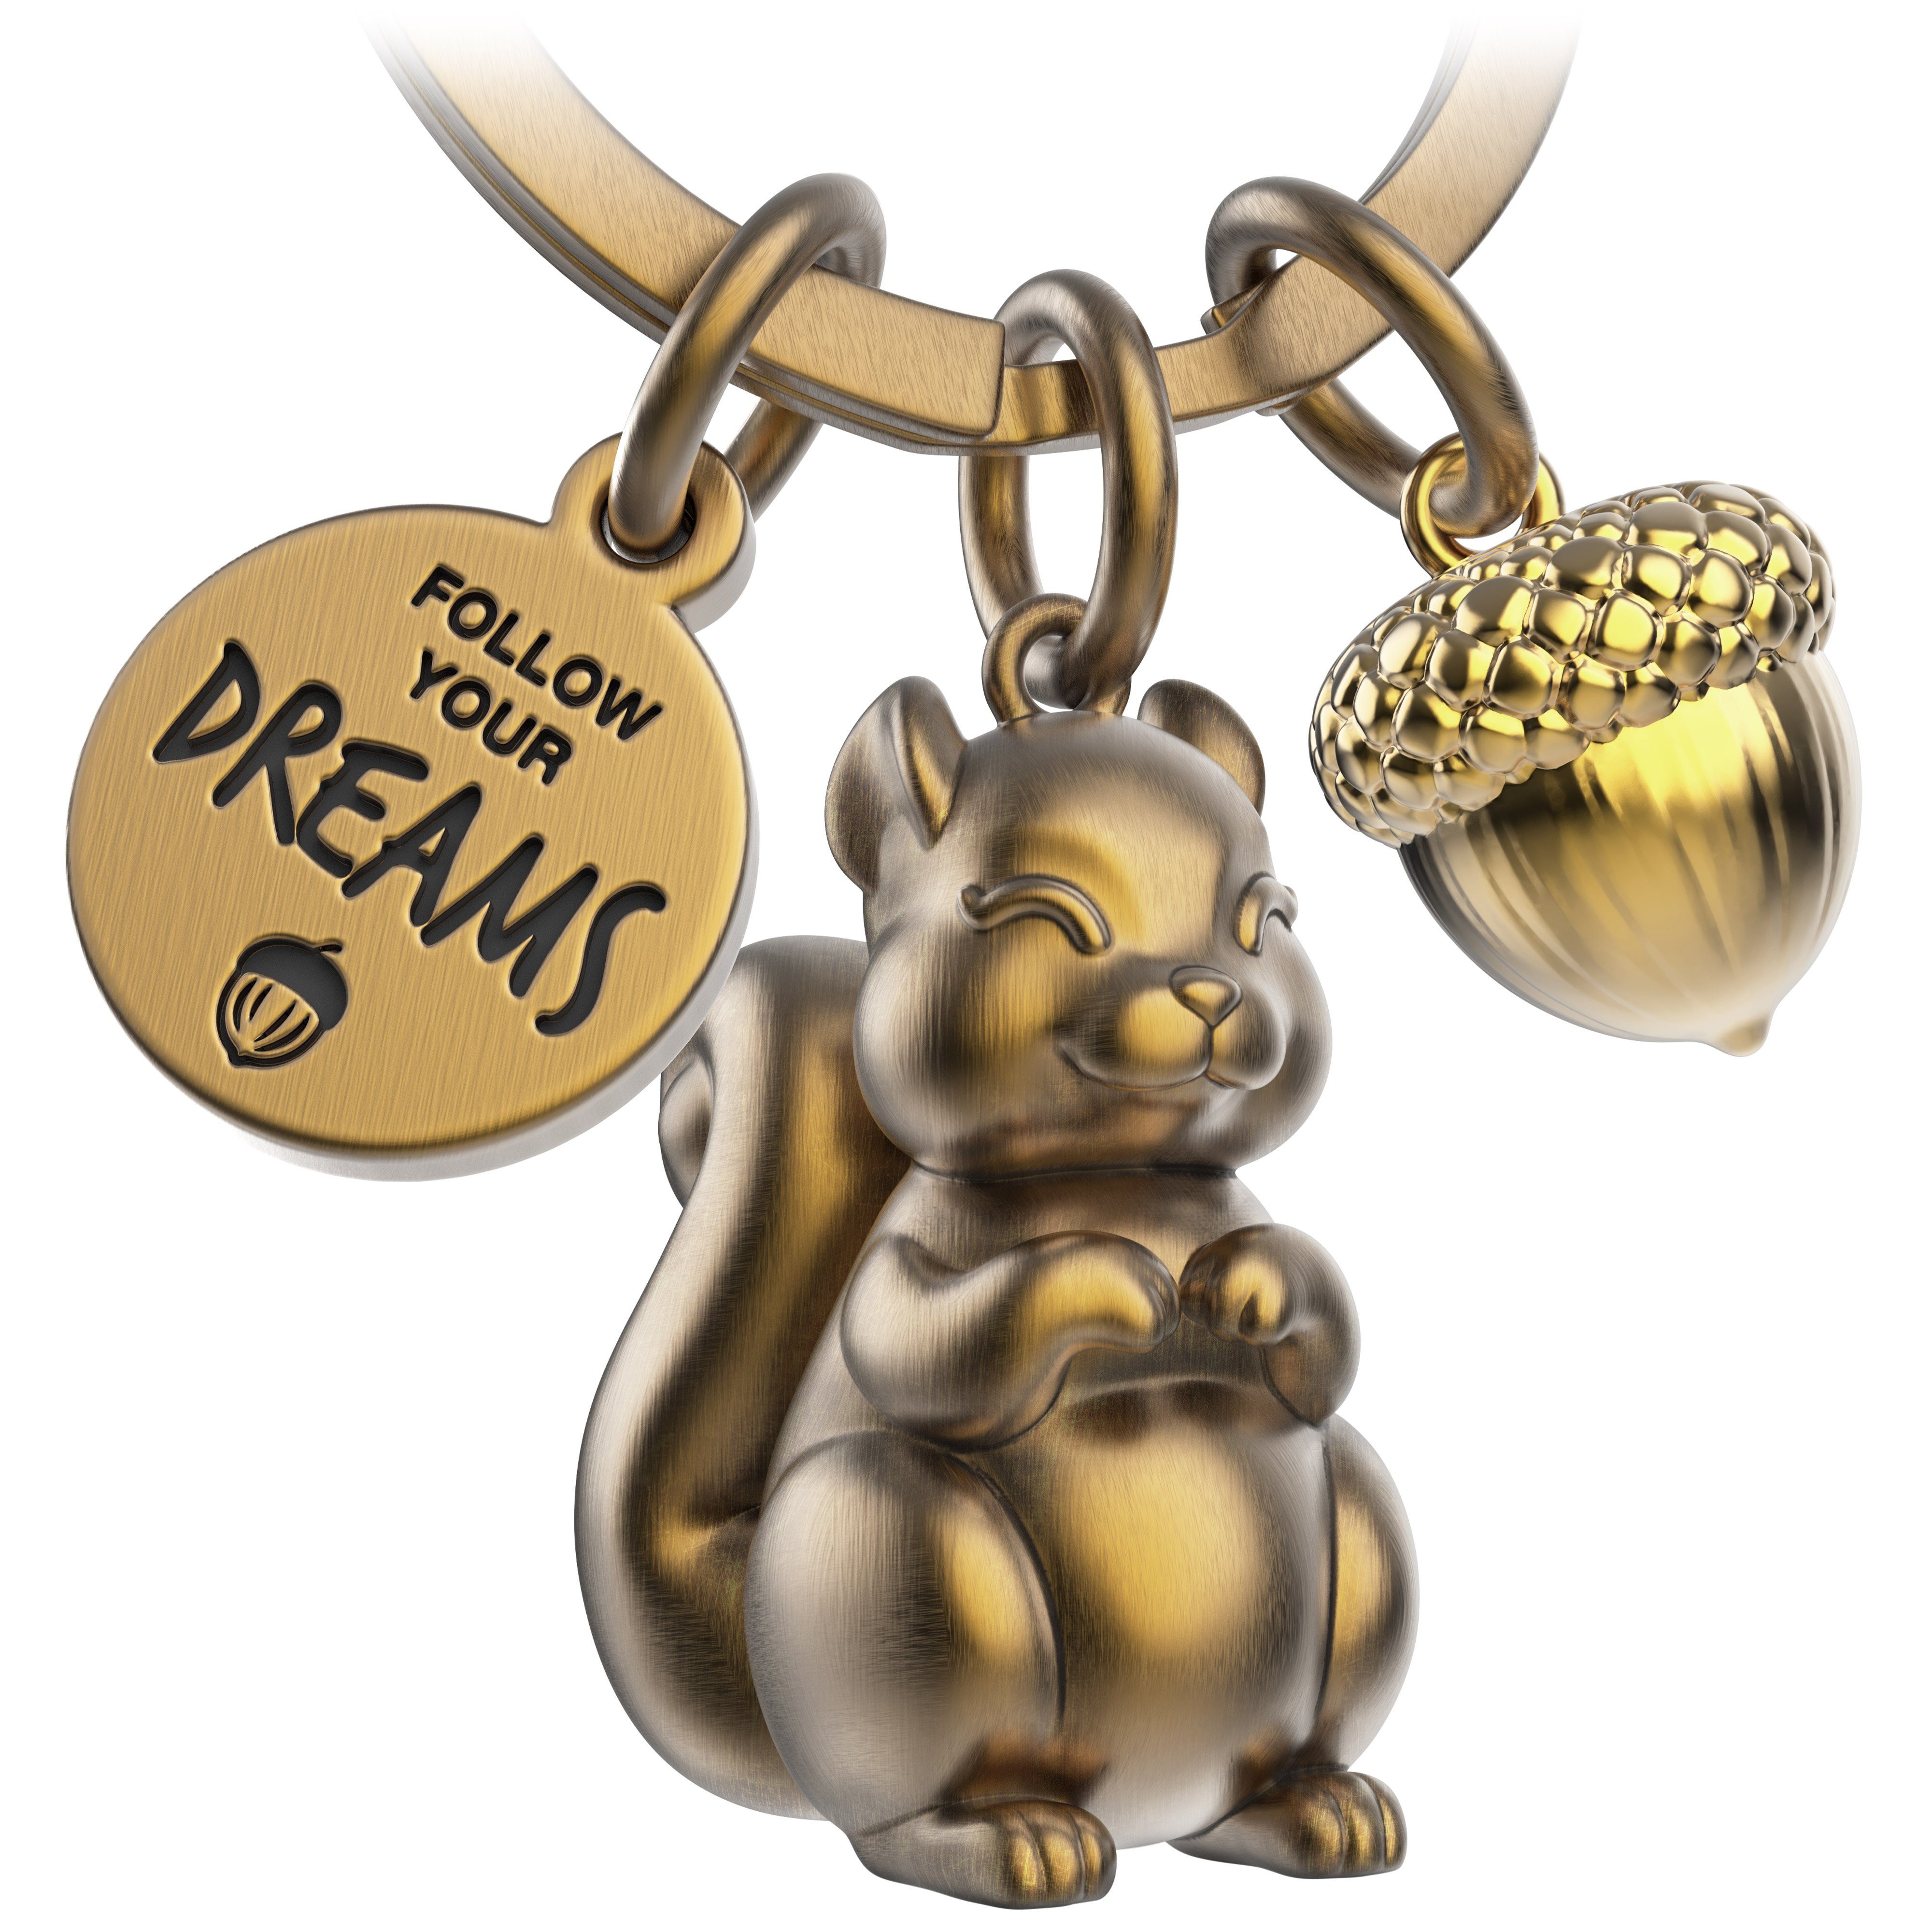 FABACH Schlüsselanhänger Eichhörnchen Skippy - Follow Your Dreams - Glücksbringer Mutmacher Antique Bronze